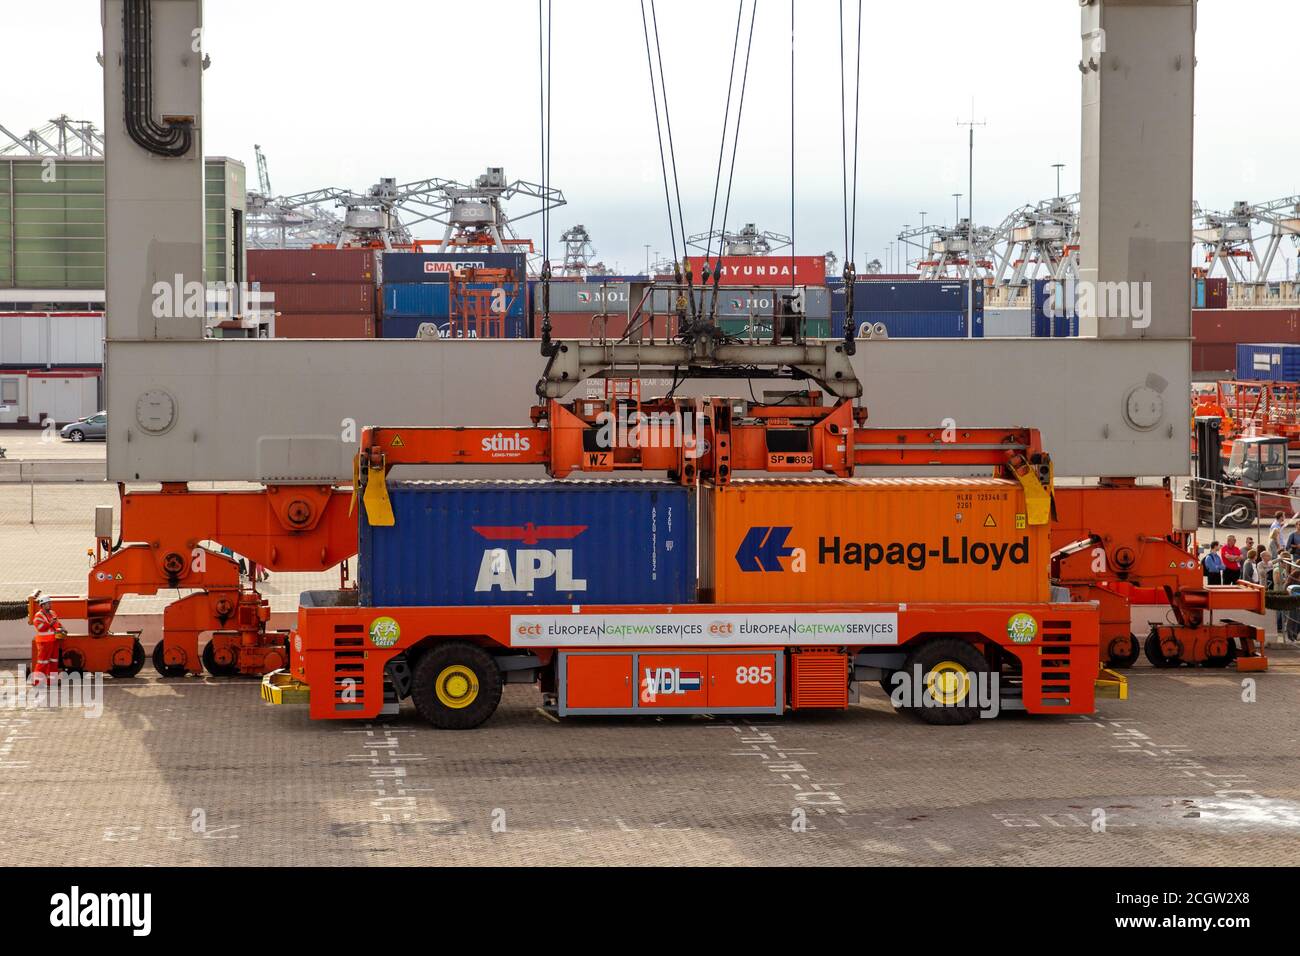 Opérateur de grue portique plaçant des conteneurs d'expédition sur un véhicule de transport automatisé dans le port de Rotterdam (pays-Bas), le 8 septembre 2013. Banque D'Images